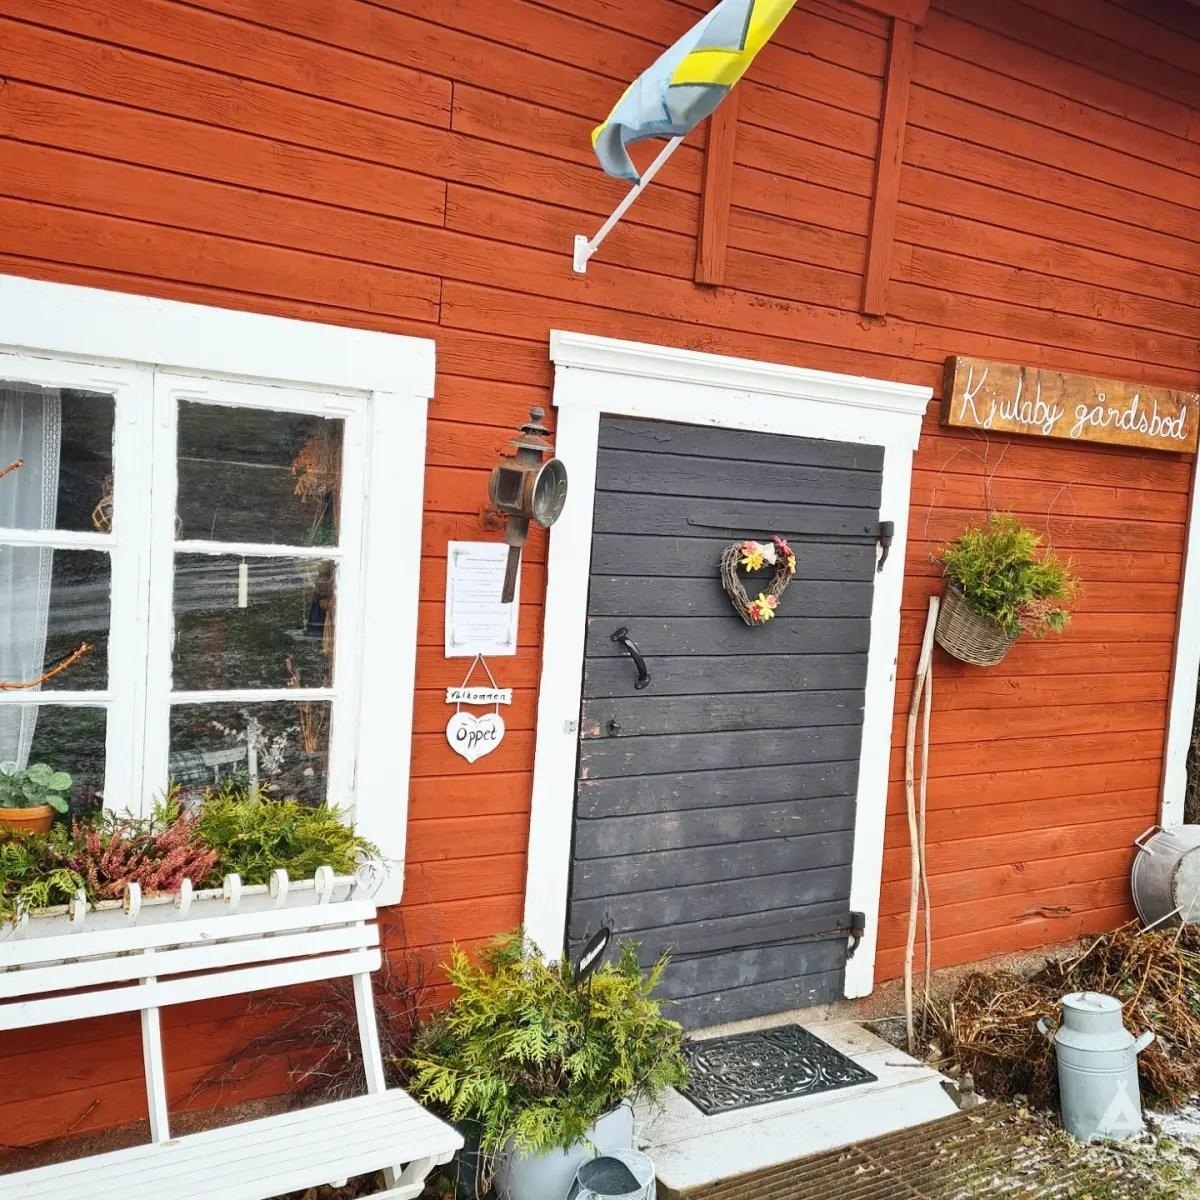 Kjulaby gårdsbod, café och camp, Eskilstuna, Sweden